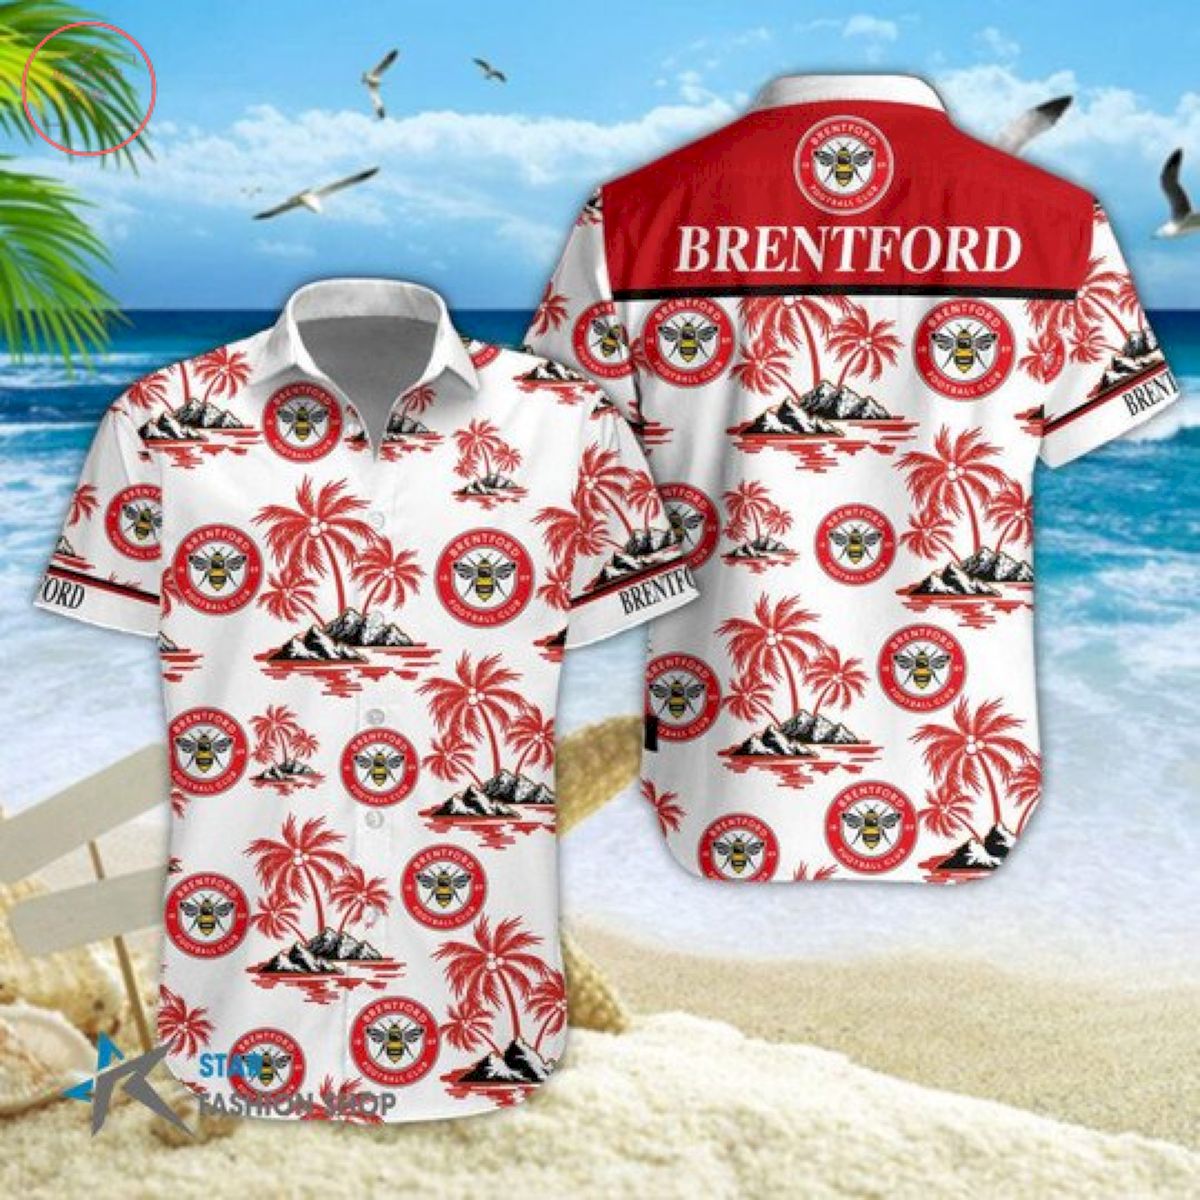 EPL Brentford Floral Hawaiian Shirts and Shorts